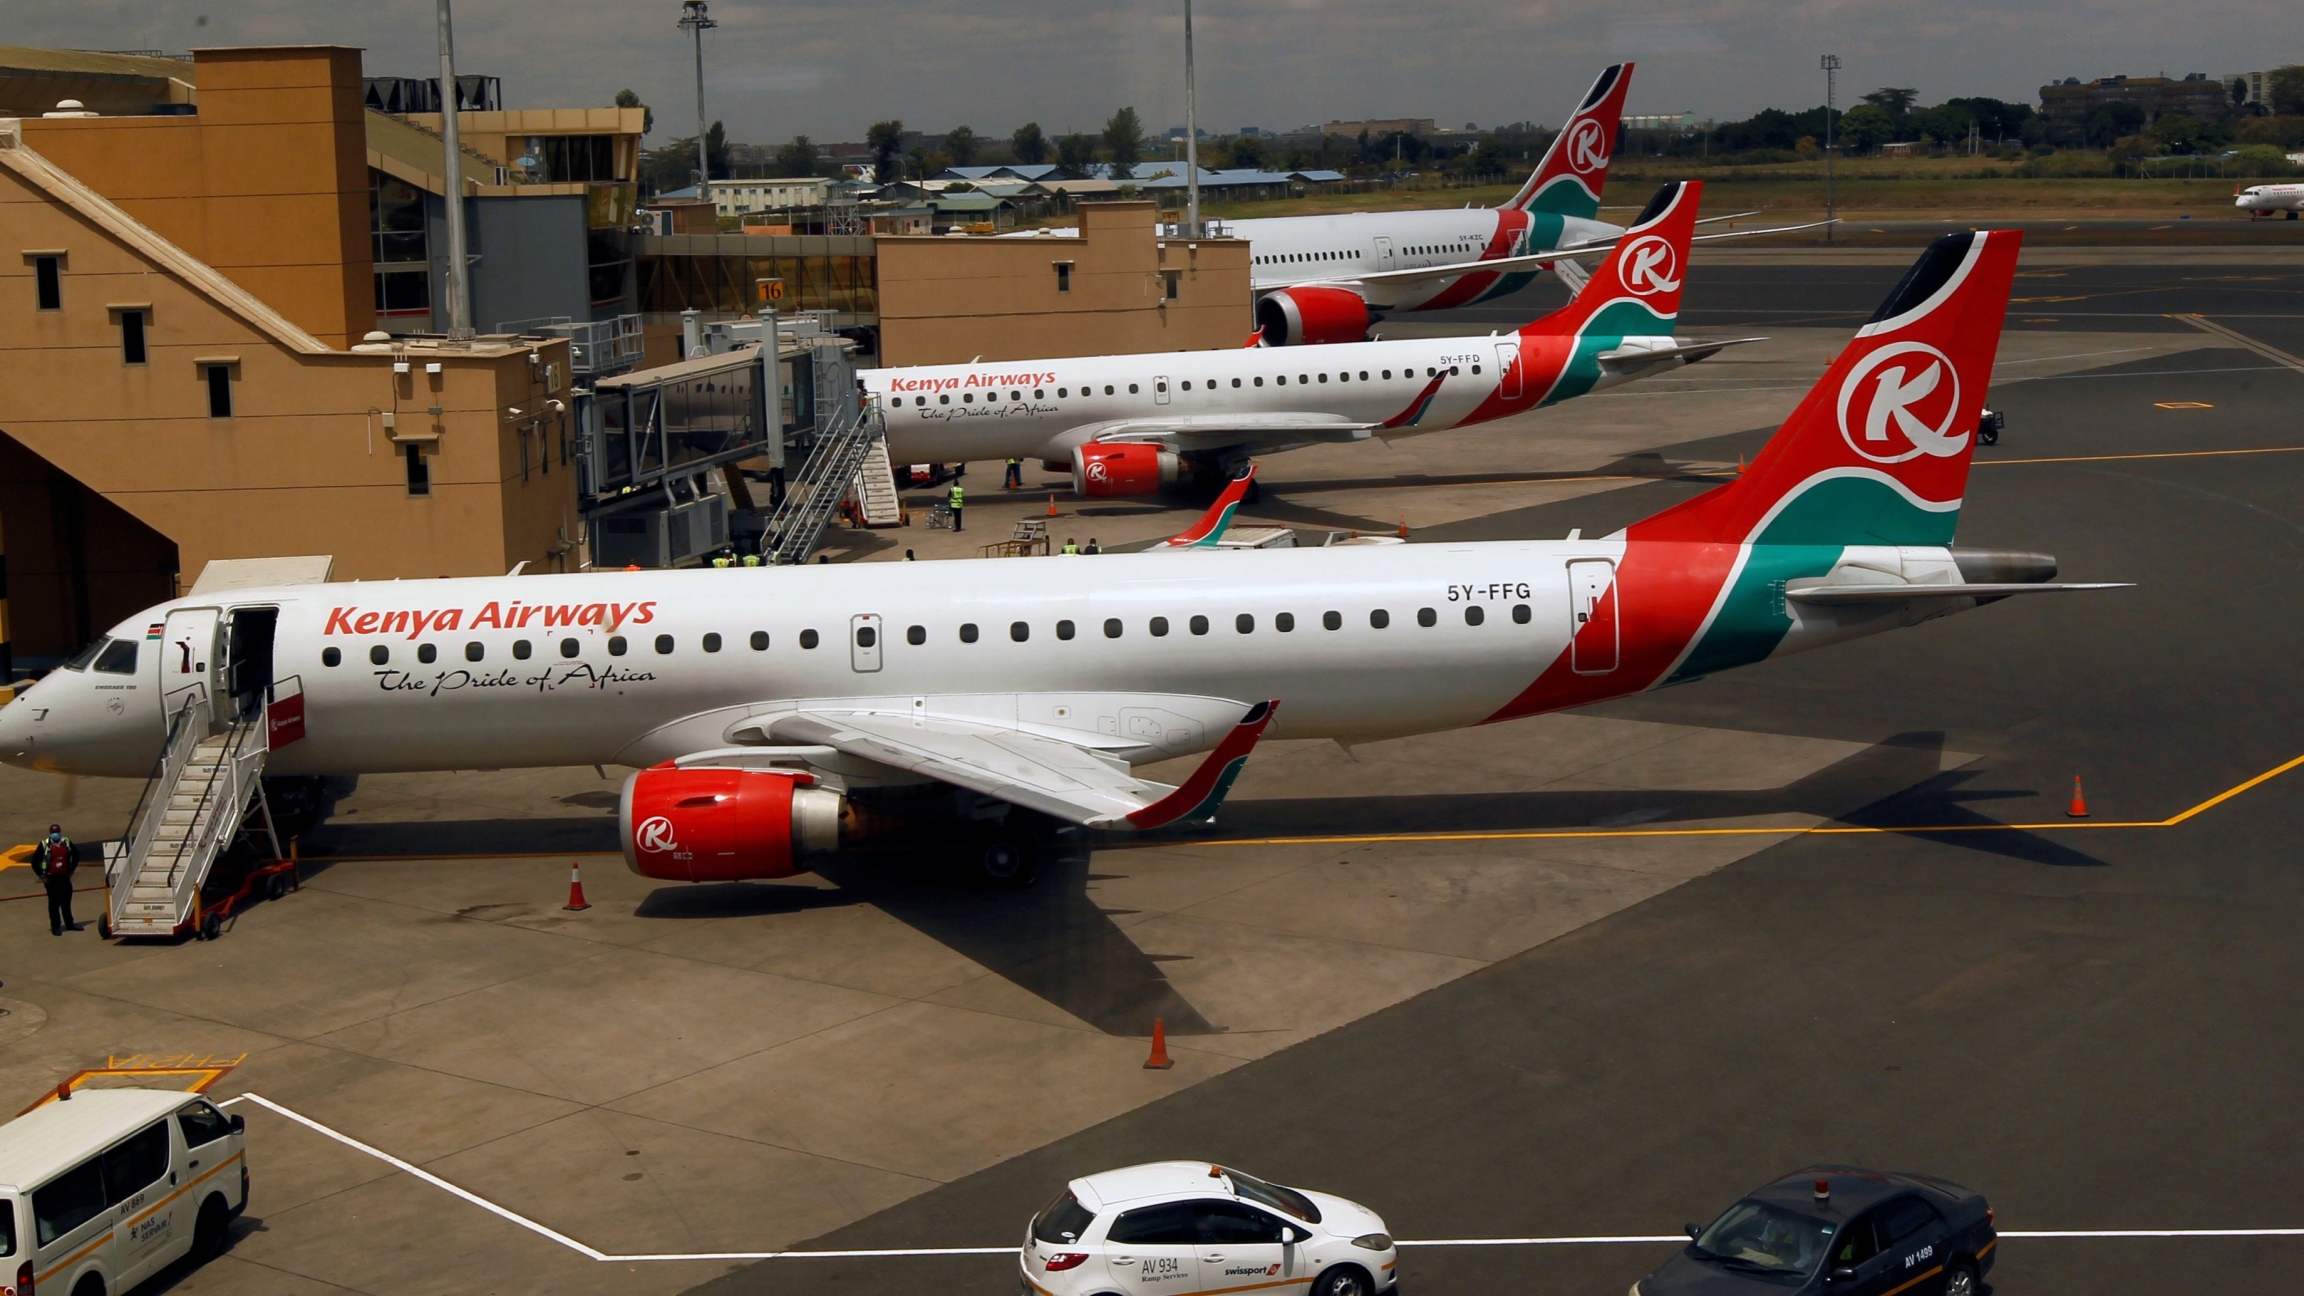 International flights resume in East Africa